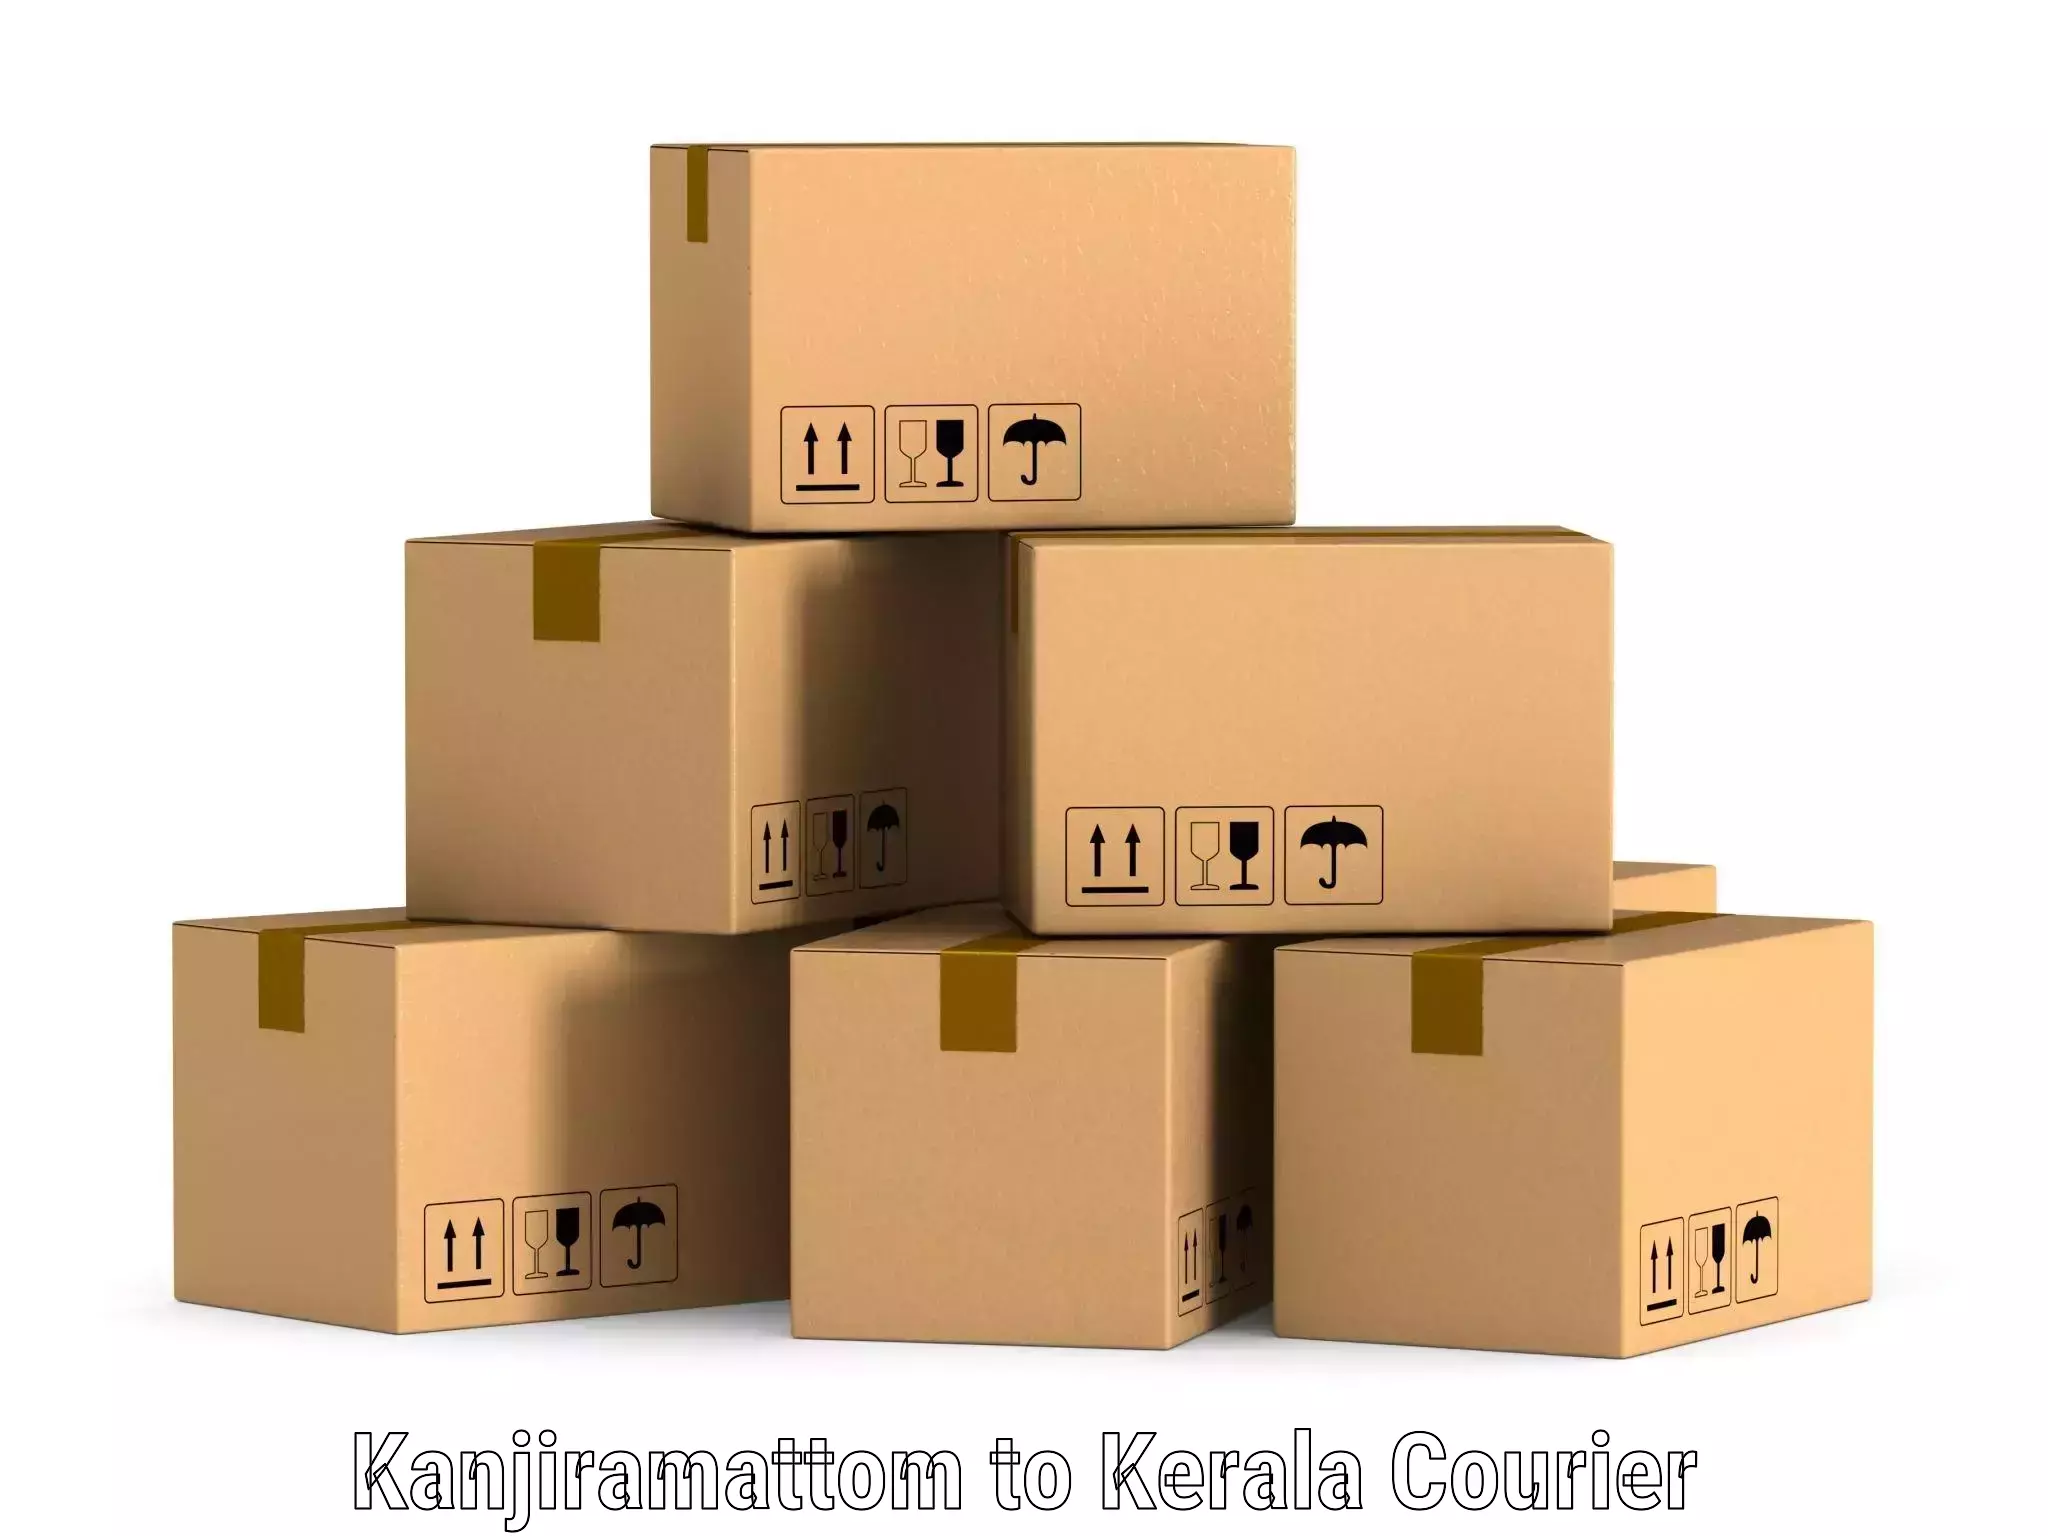 Enhanced shipping experience Kanjiramattom to Kalanjoor